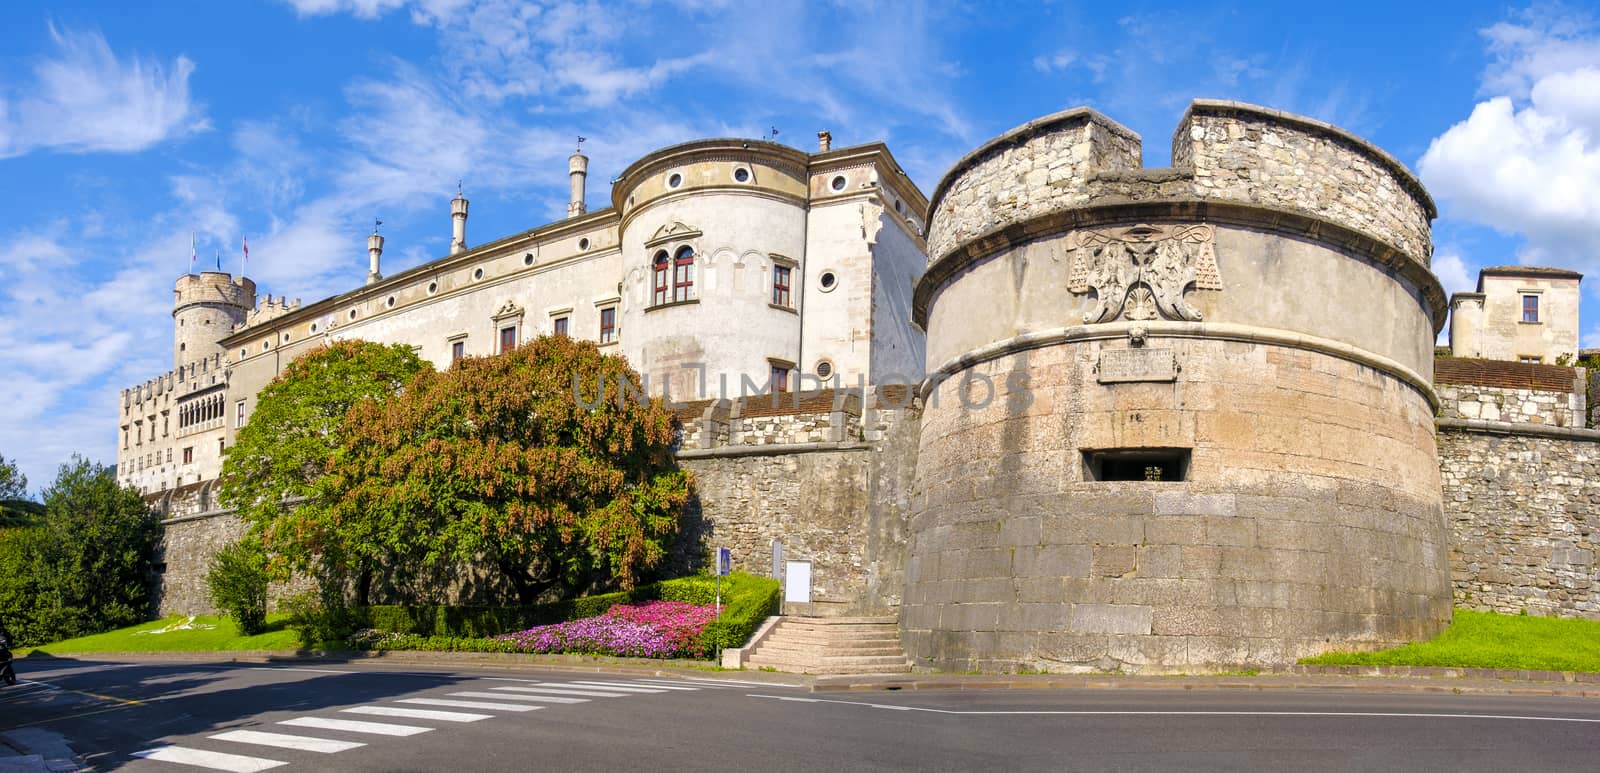 Castello del Buonconsiglio ( Buonconsiglio Castle ) in Trento - Trentino Alto Adige - Italy